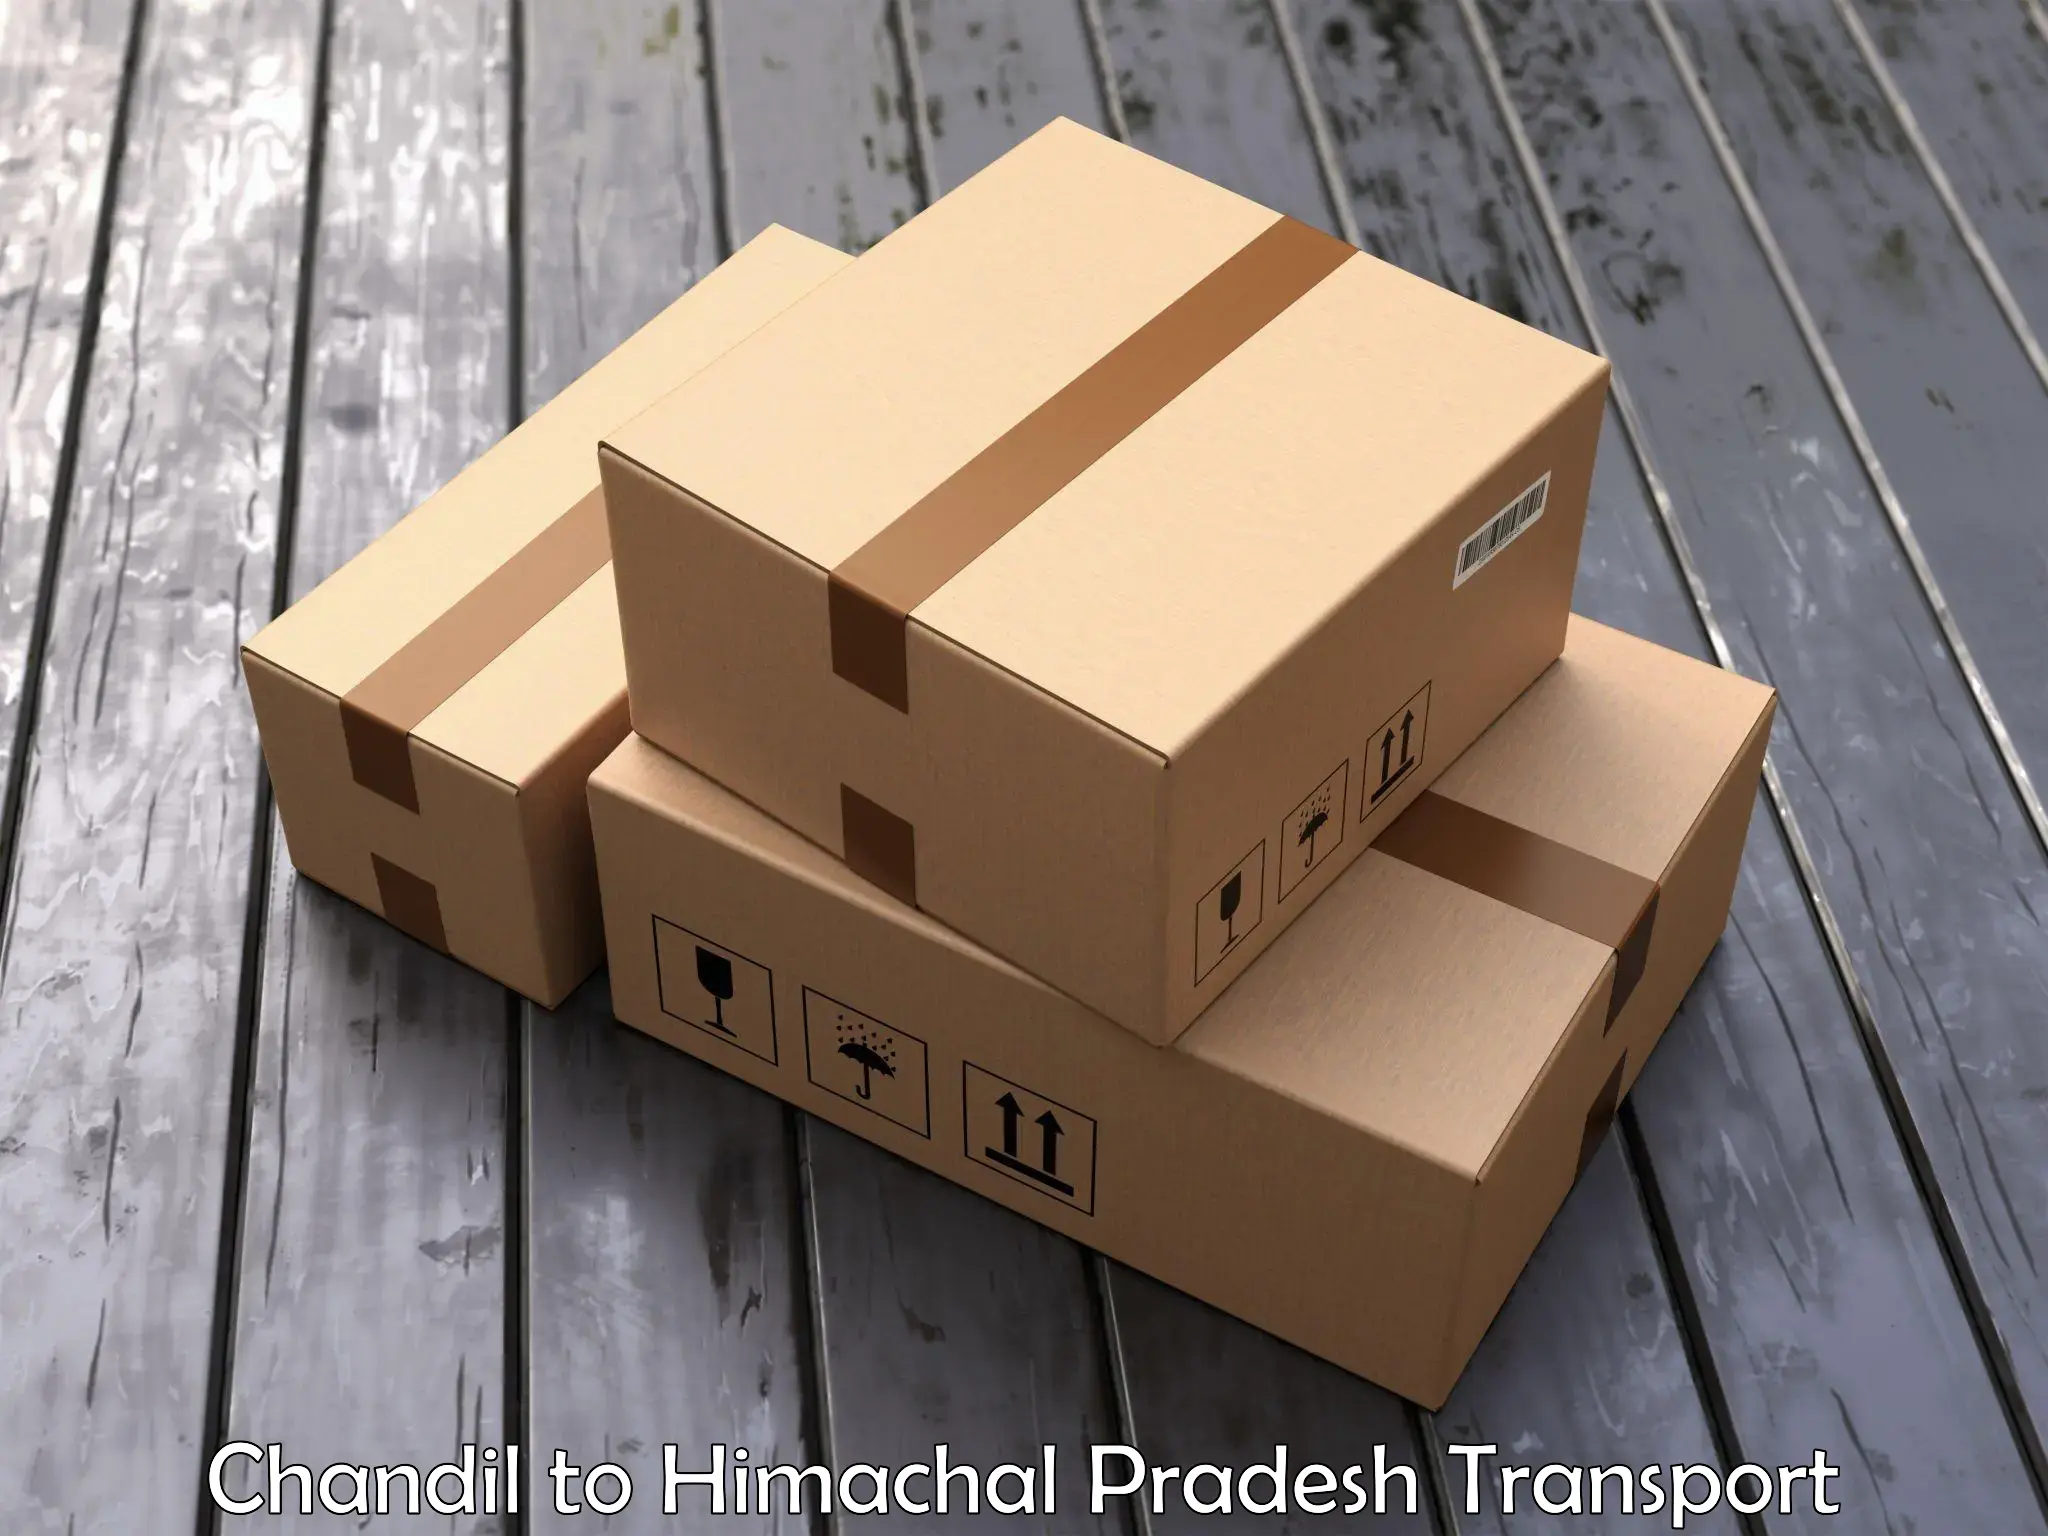 Truck transport companies in India Chandil to Kalol Jhandutta